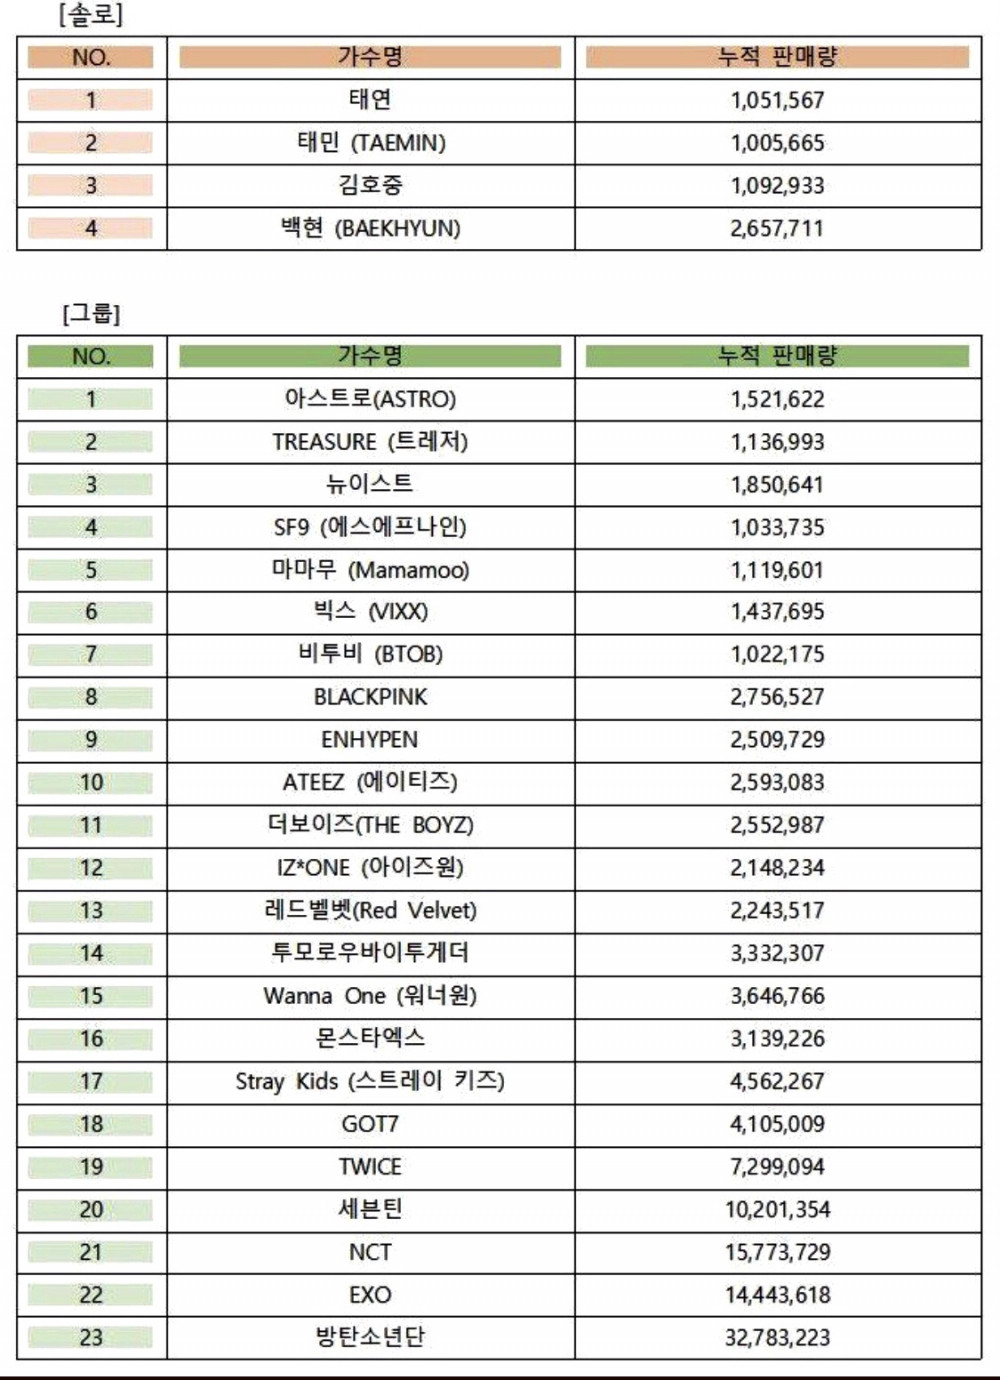 Тэмин SHINee официально вошел в список артистов с миллионными продажами